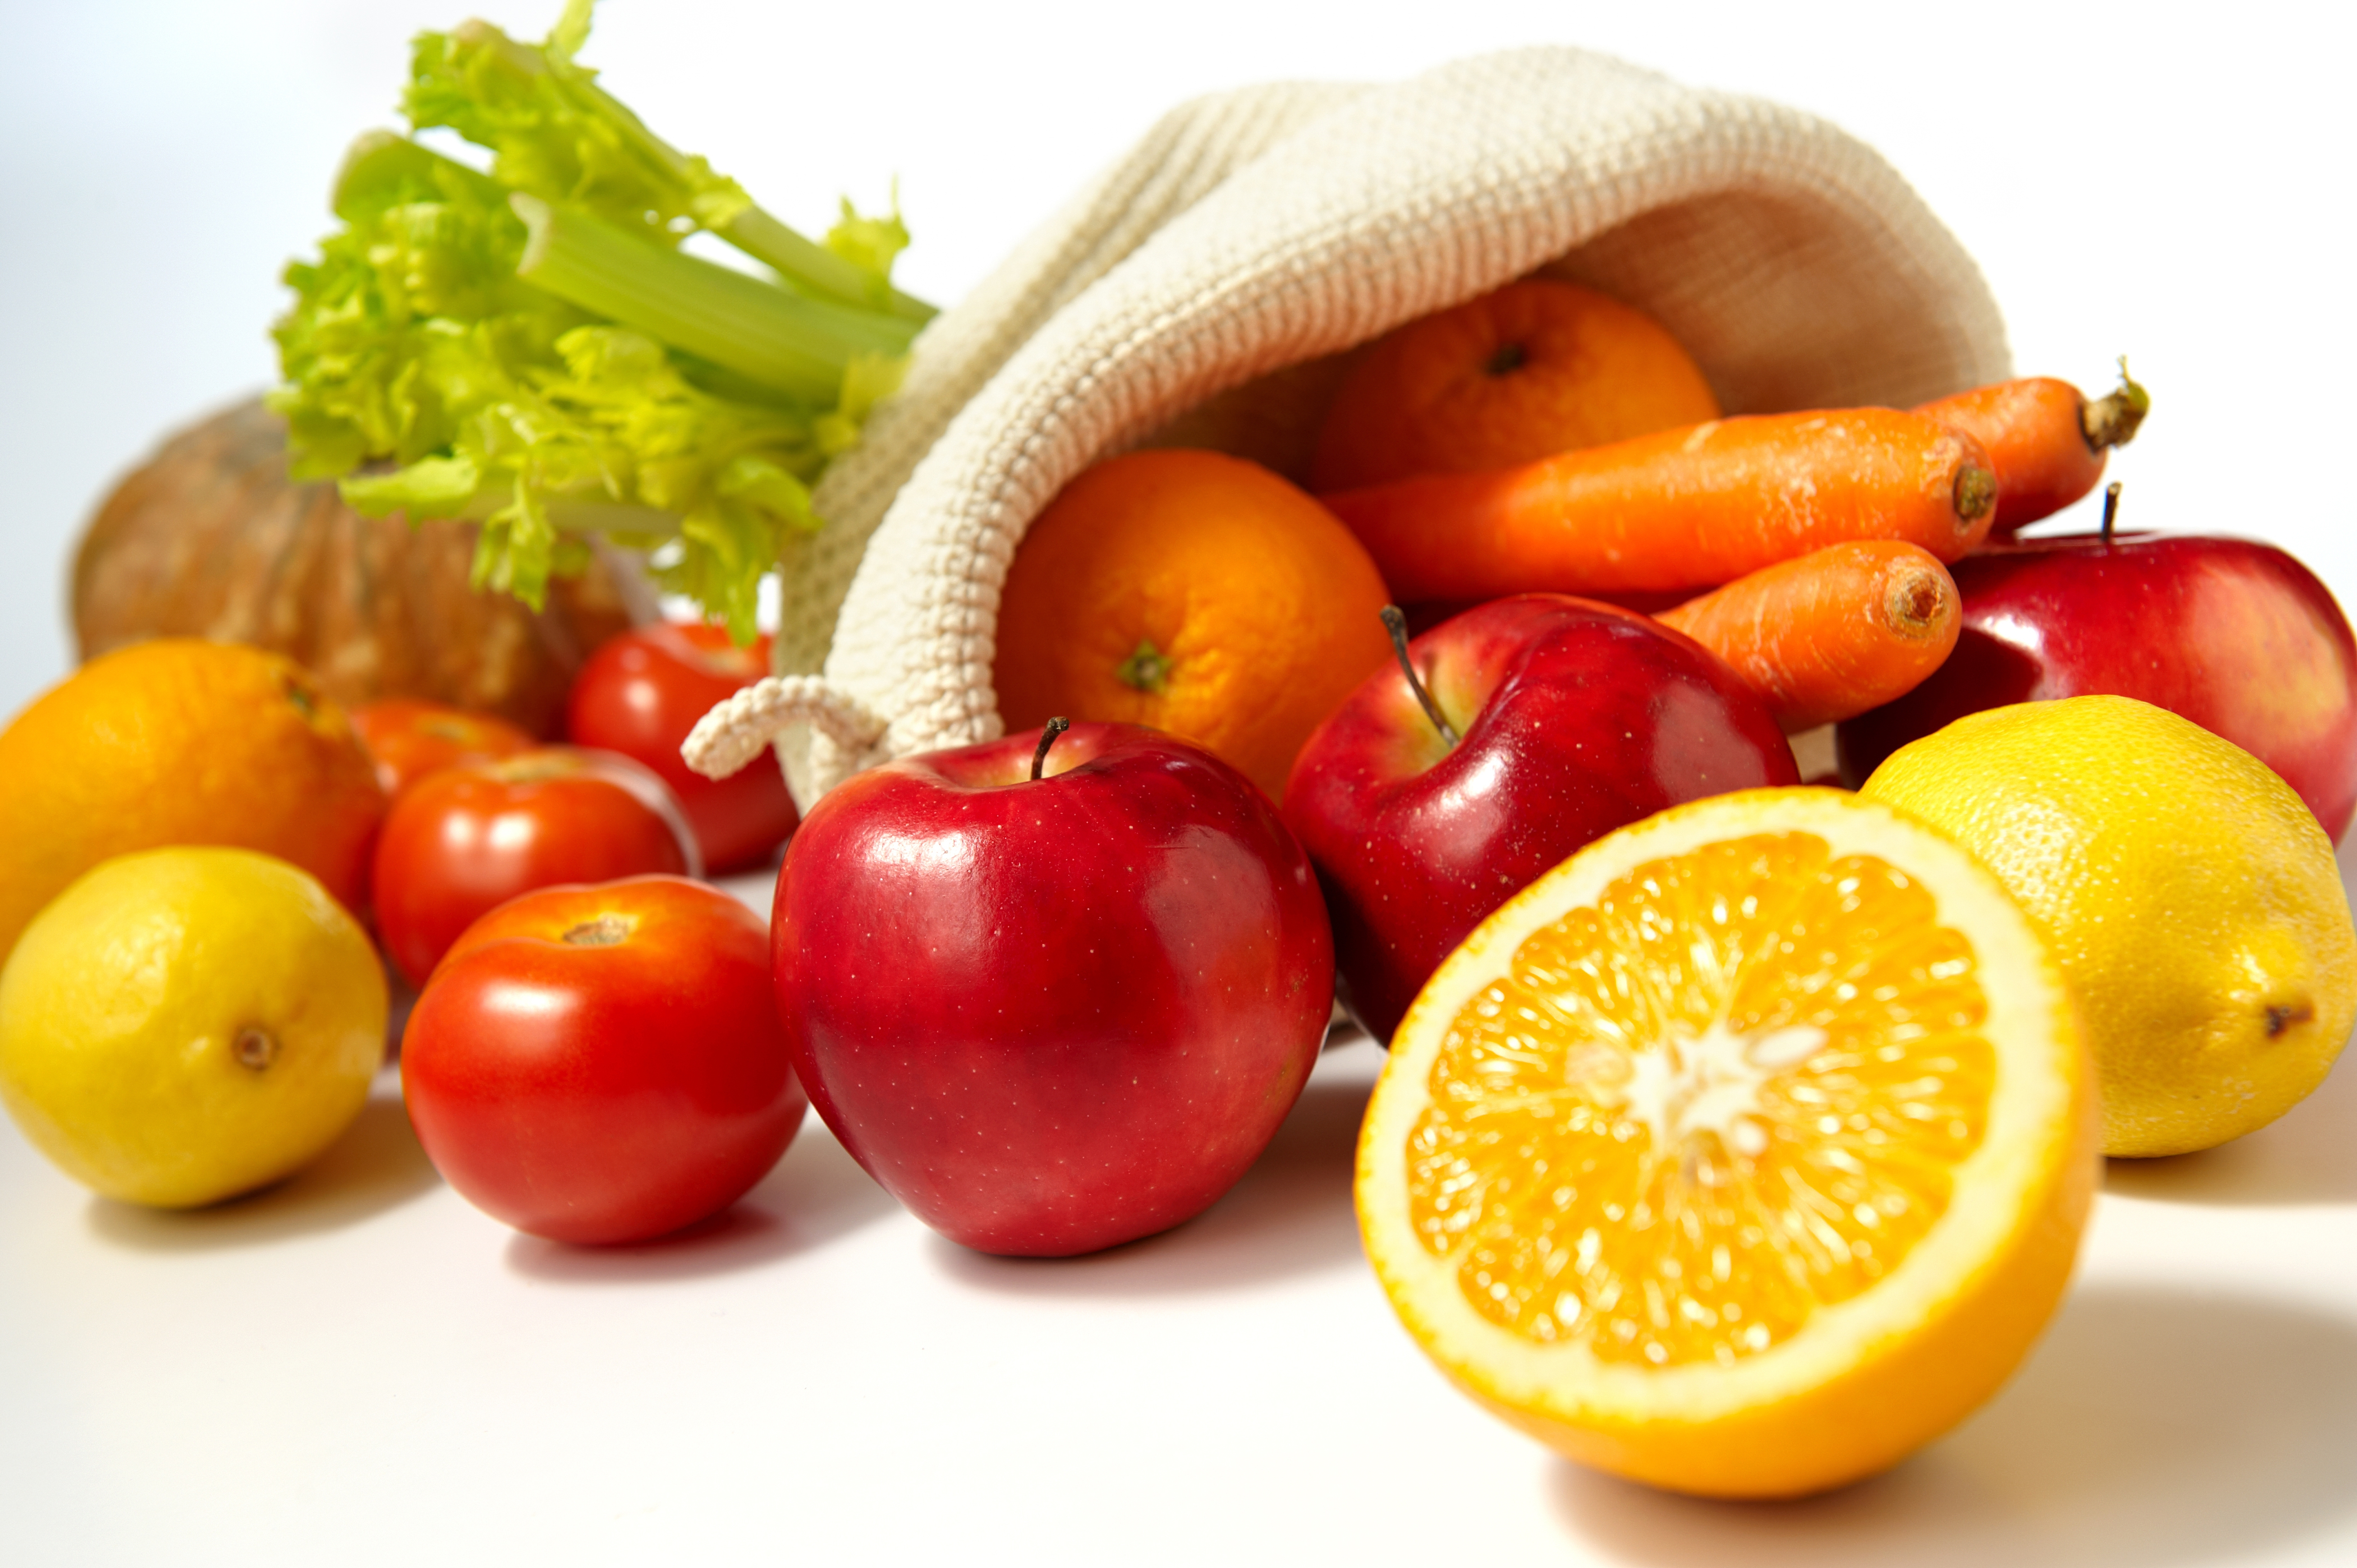 Download mobile wallpaper Carrot, Food, Tomato, Apples, Lemon for free.